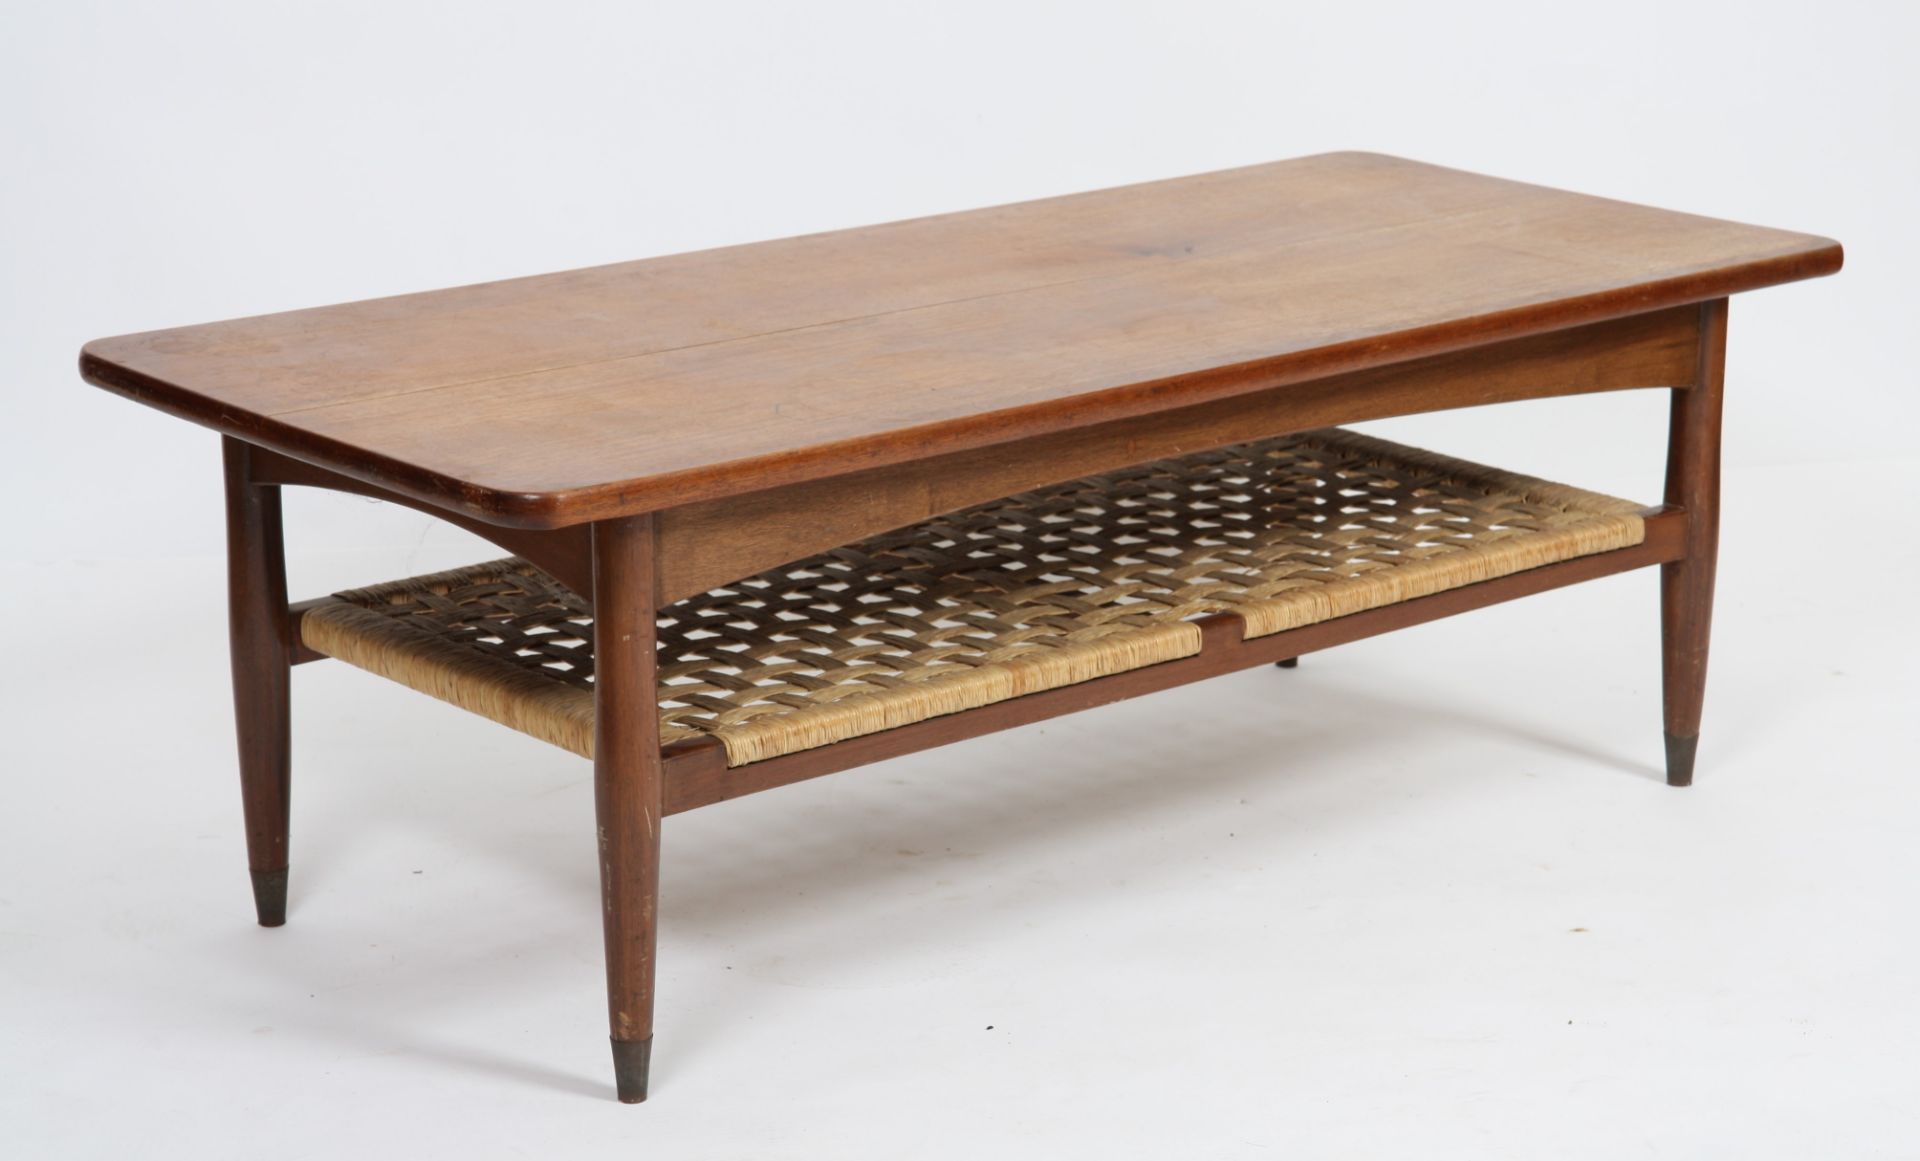 TABLE BASSE DE HANS WEGNER (1914-2007) En chêne de forme rectangulaire à quatre [...]